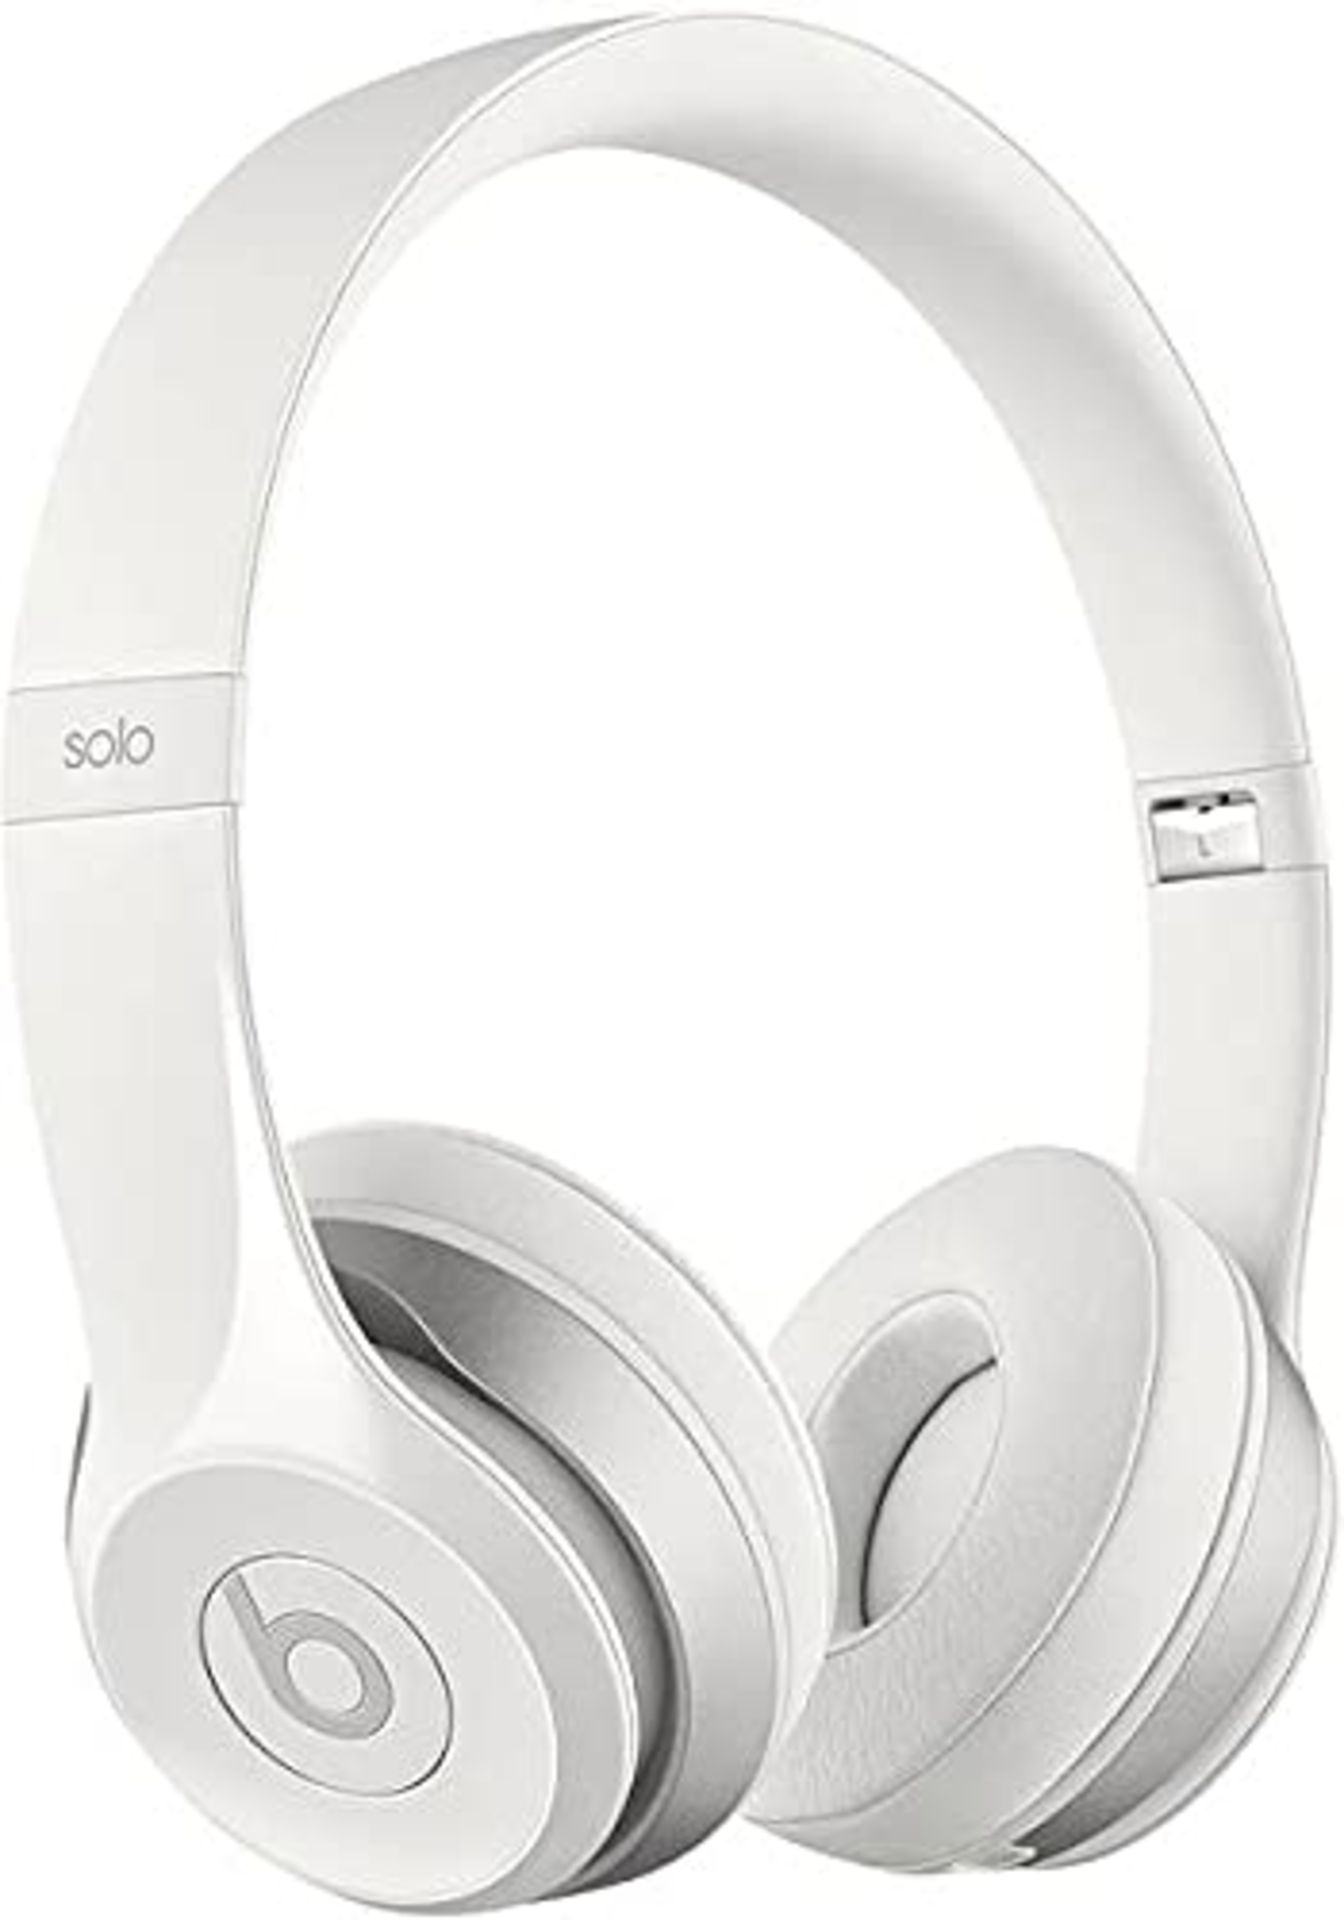 RRP £190.00 Beats Solo2 - On Ear Headphones White